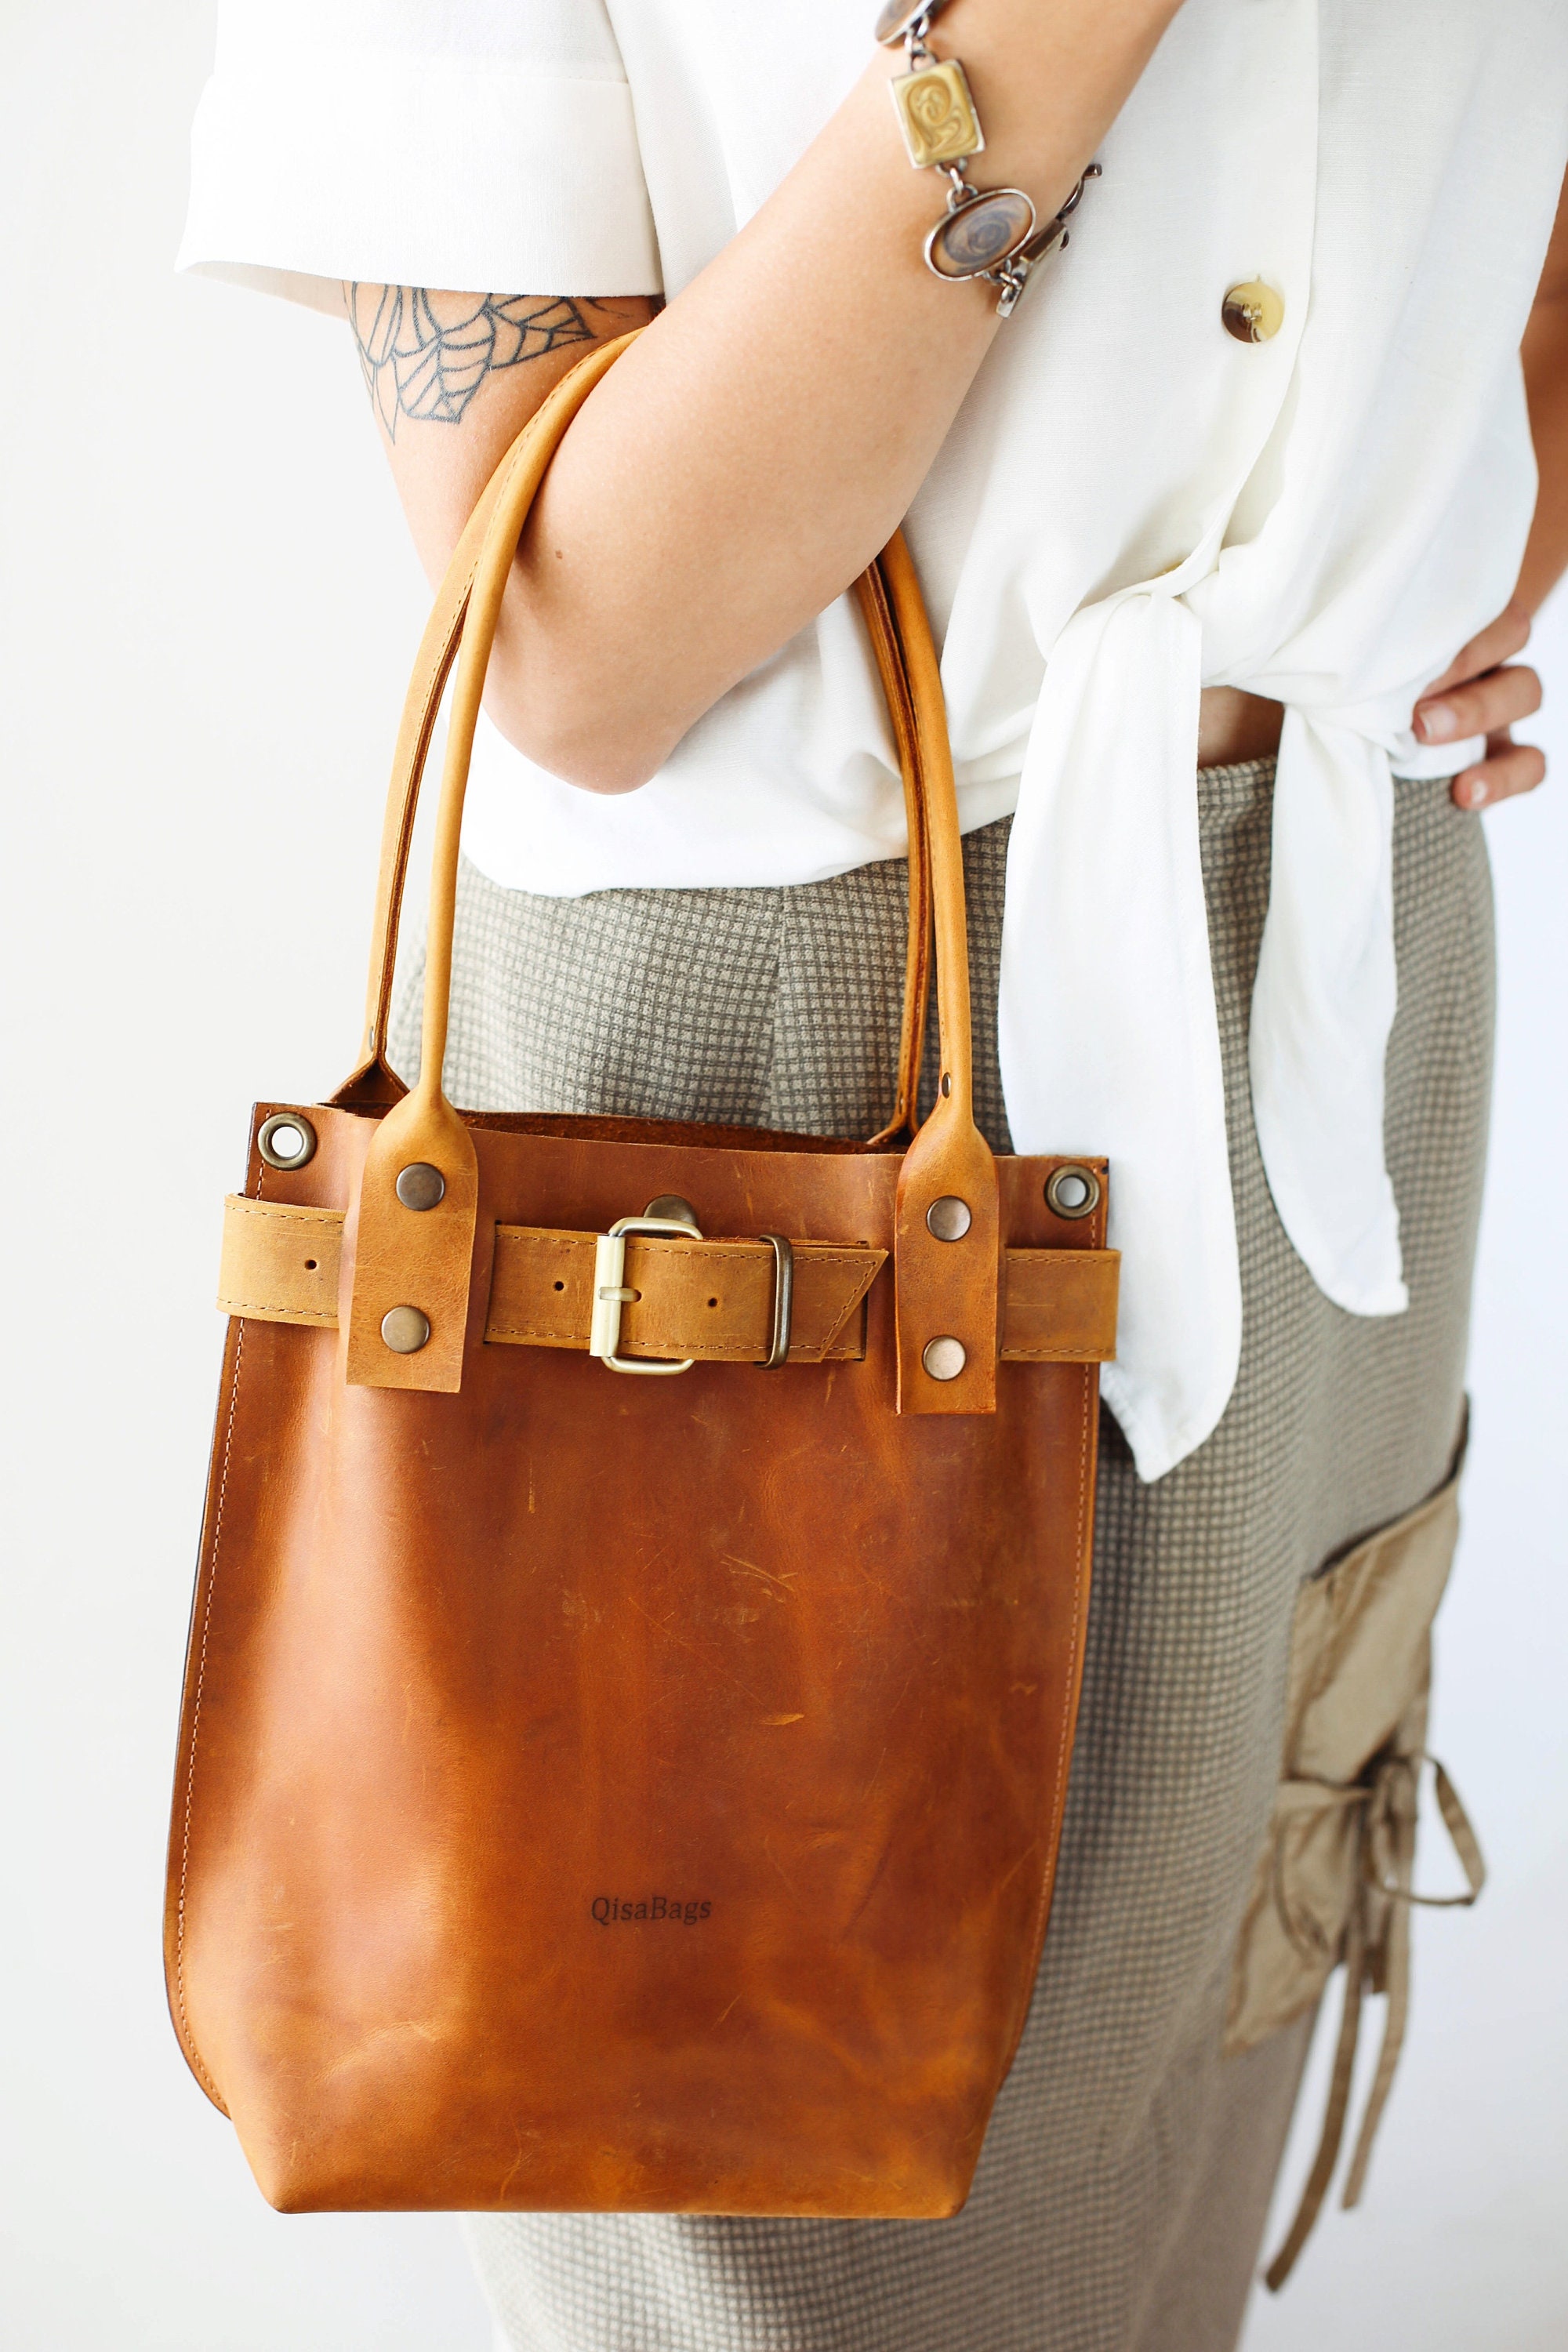 Leather Handbag Leather Shoulder Bag Brown Leather Tote | Etsy